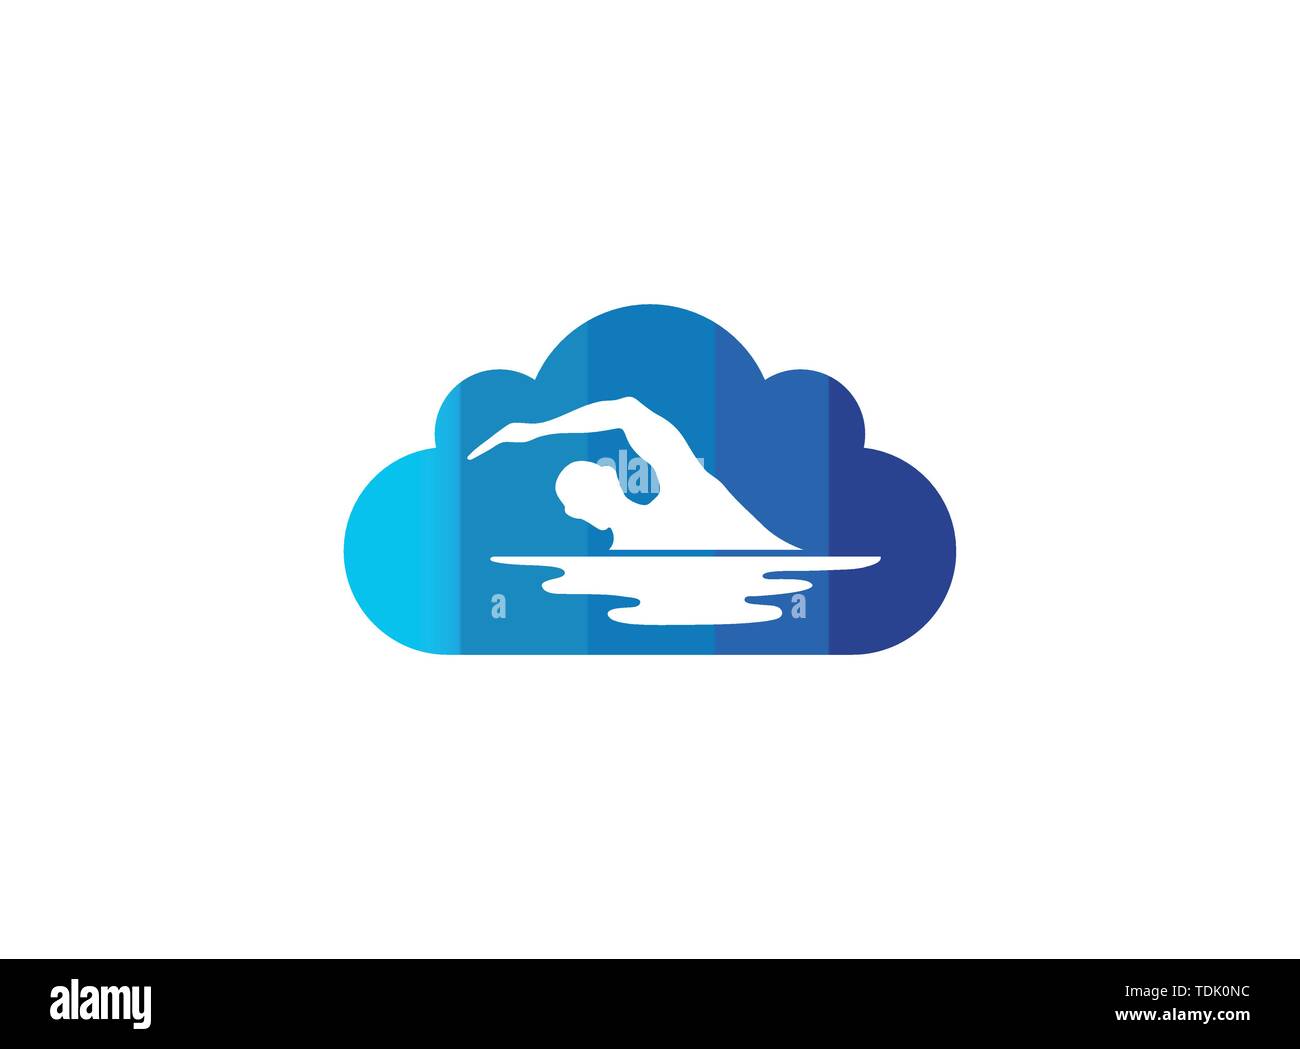 L'athlète de natation dans la piscine de Triathlon logo design illustration dans une icône de forme de nuage Illustration de Vecteur